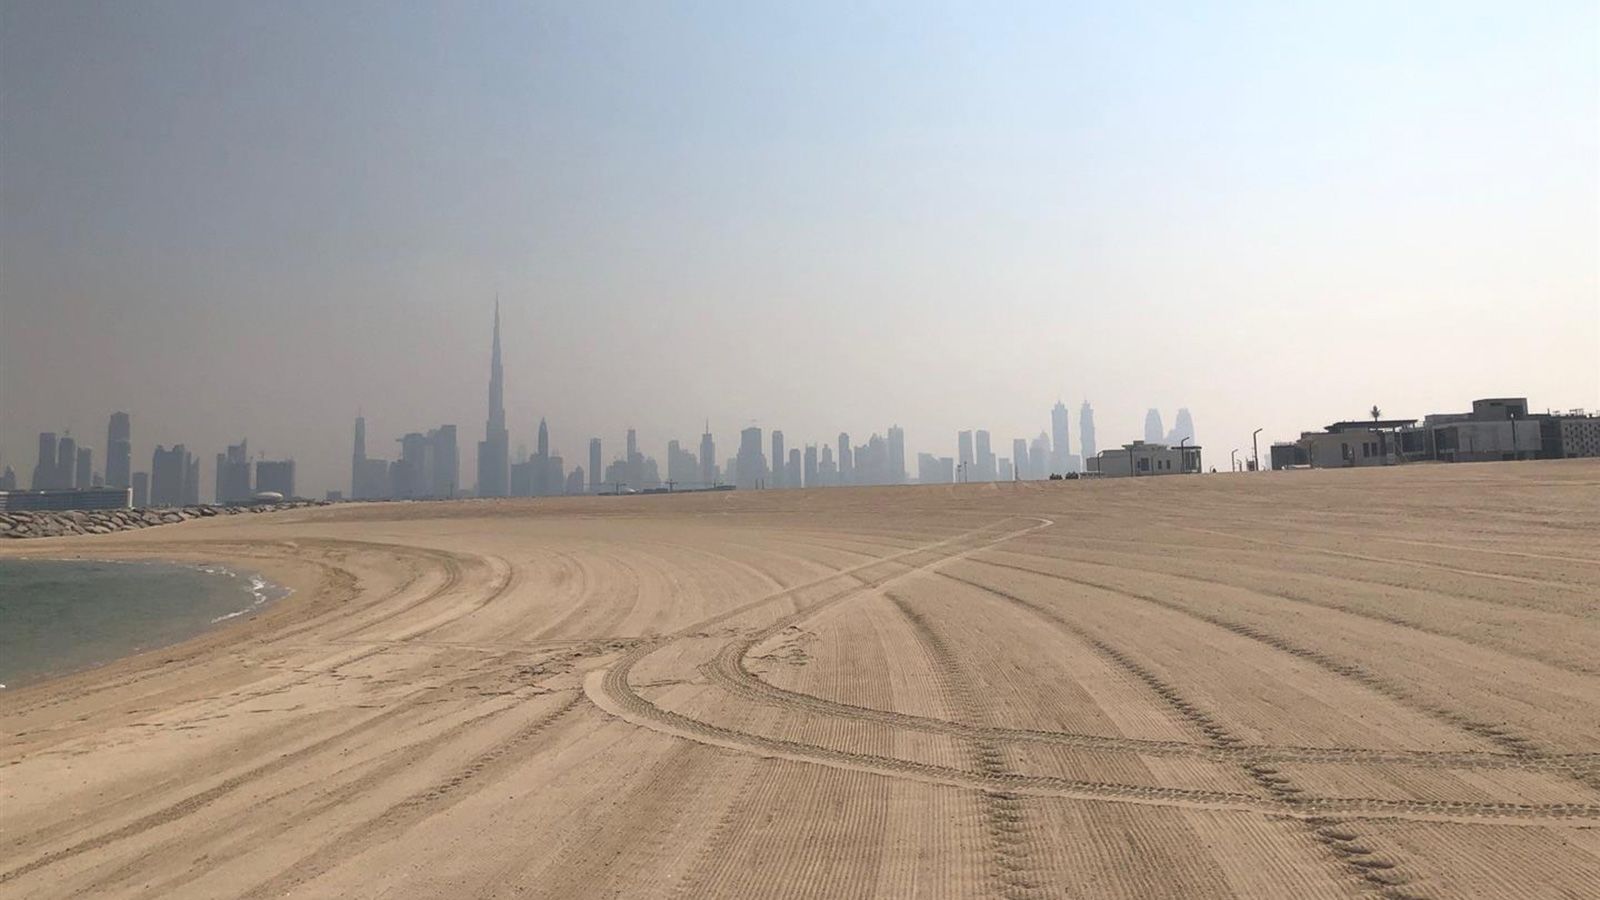 34 triệu đôla Mỹ sẽ chỉ mua được một mảnh đất cát ở Dubai - Ảnh 1.